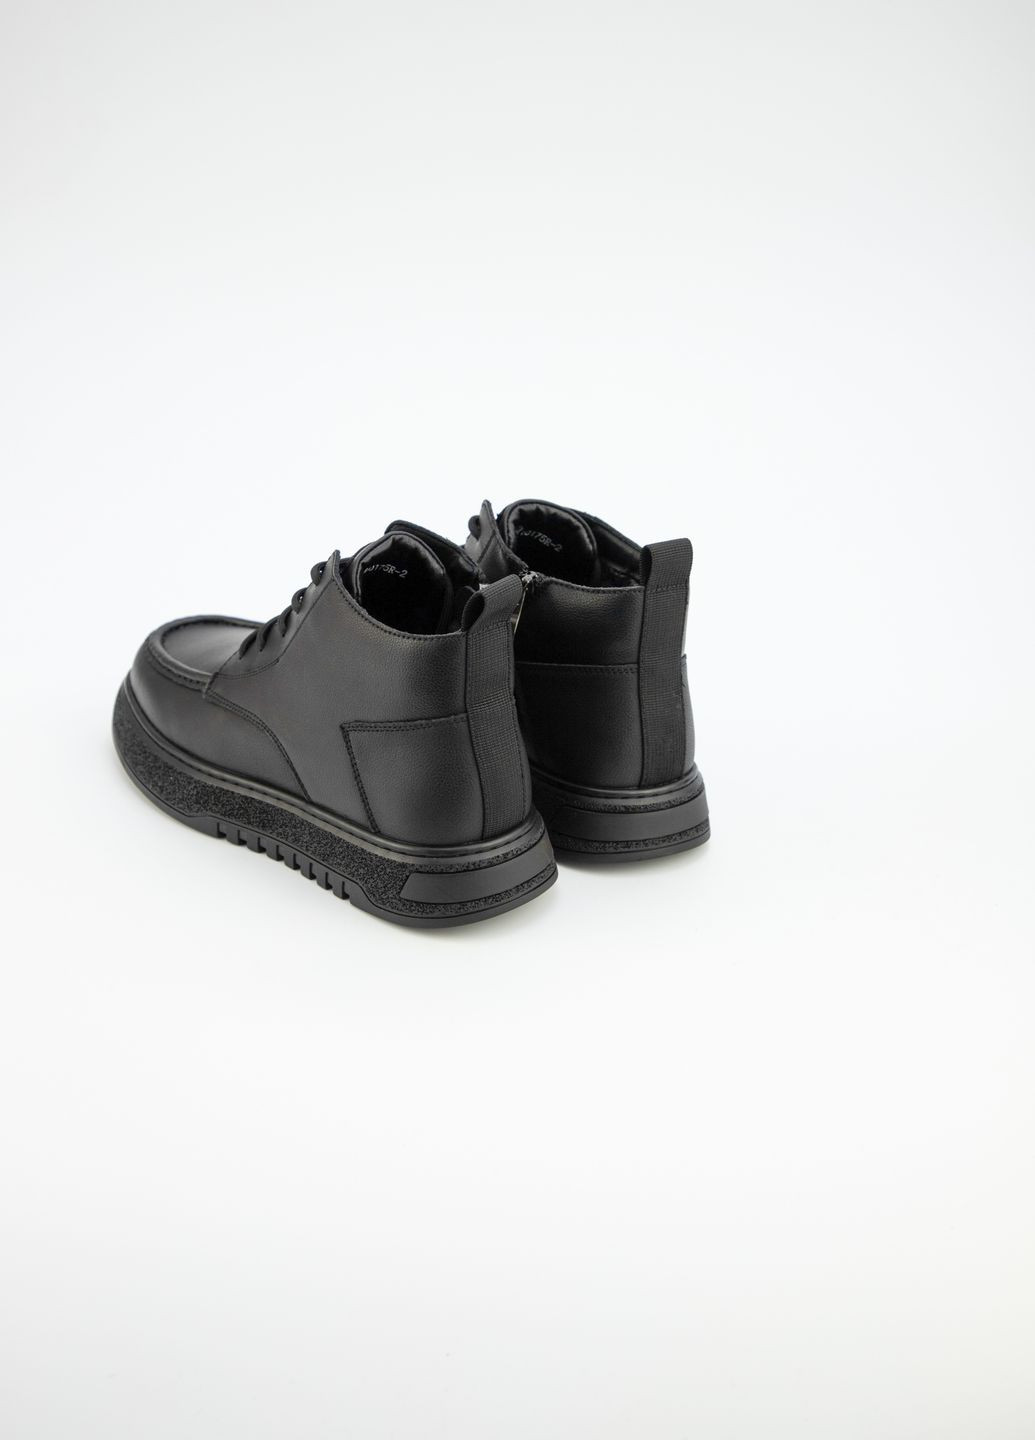 Черные зимние ботинки мужские URBAN TRACE